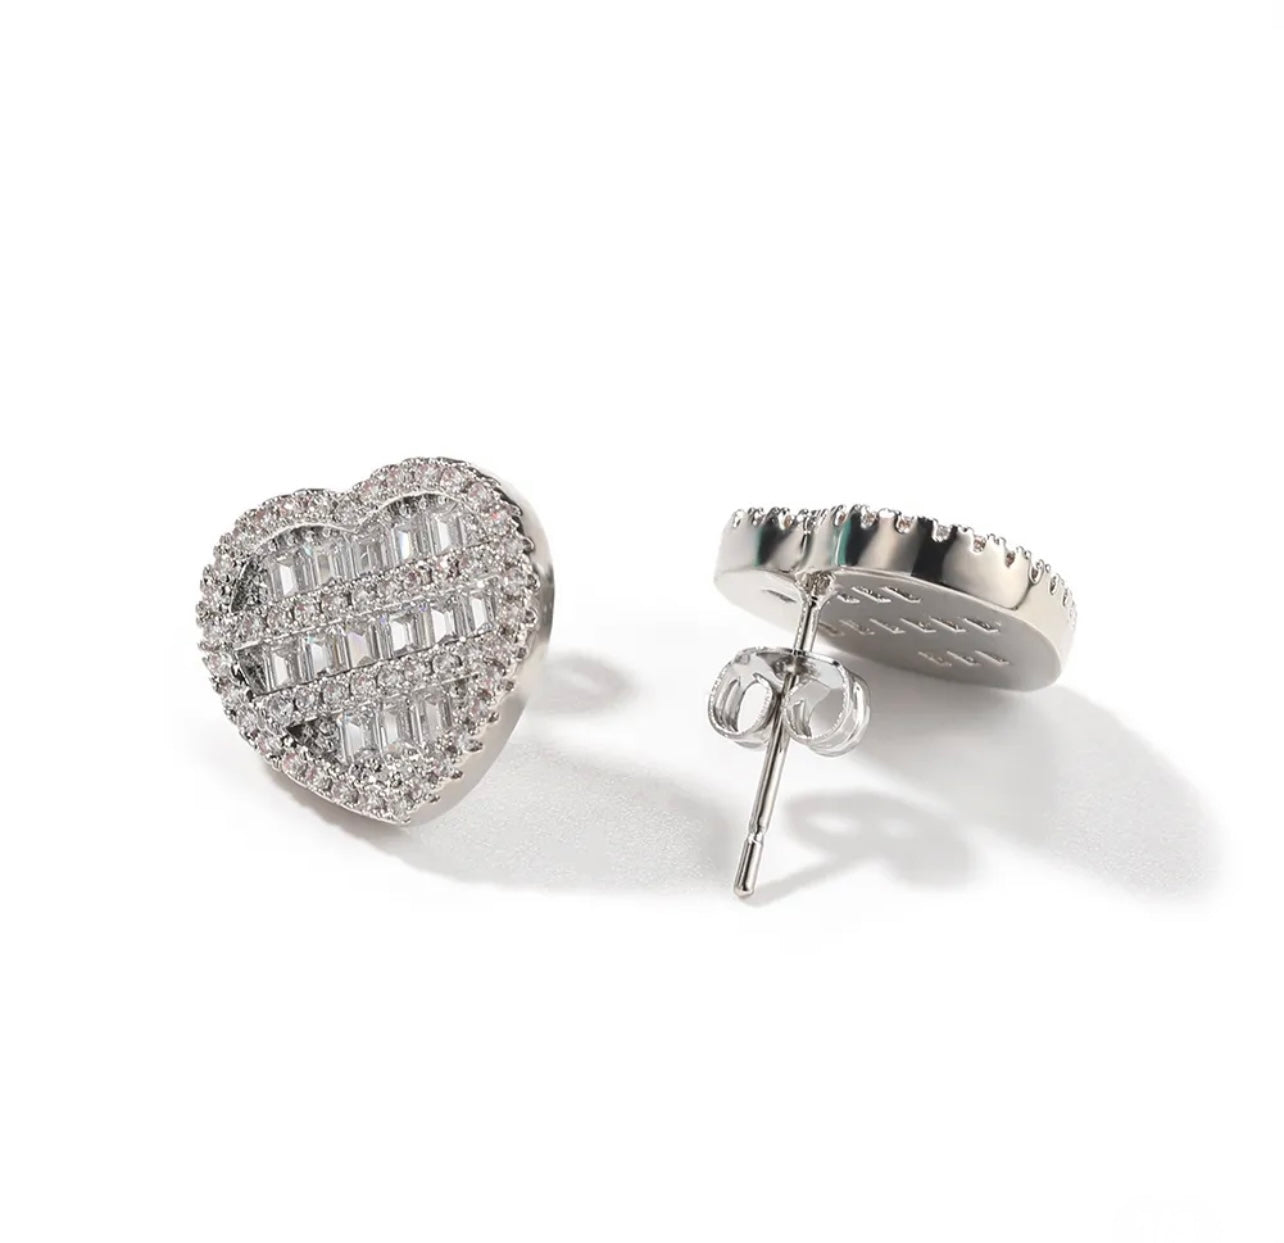 Crushed Heart Earrings “Silver”